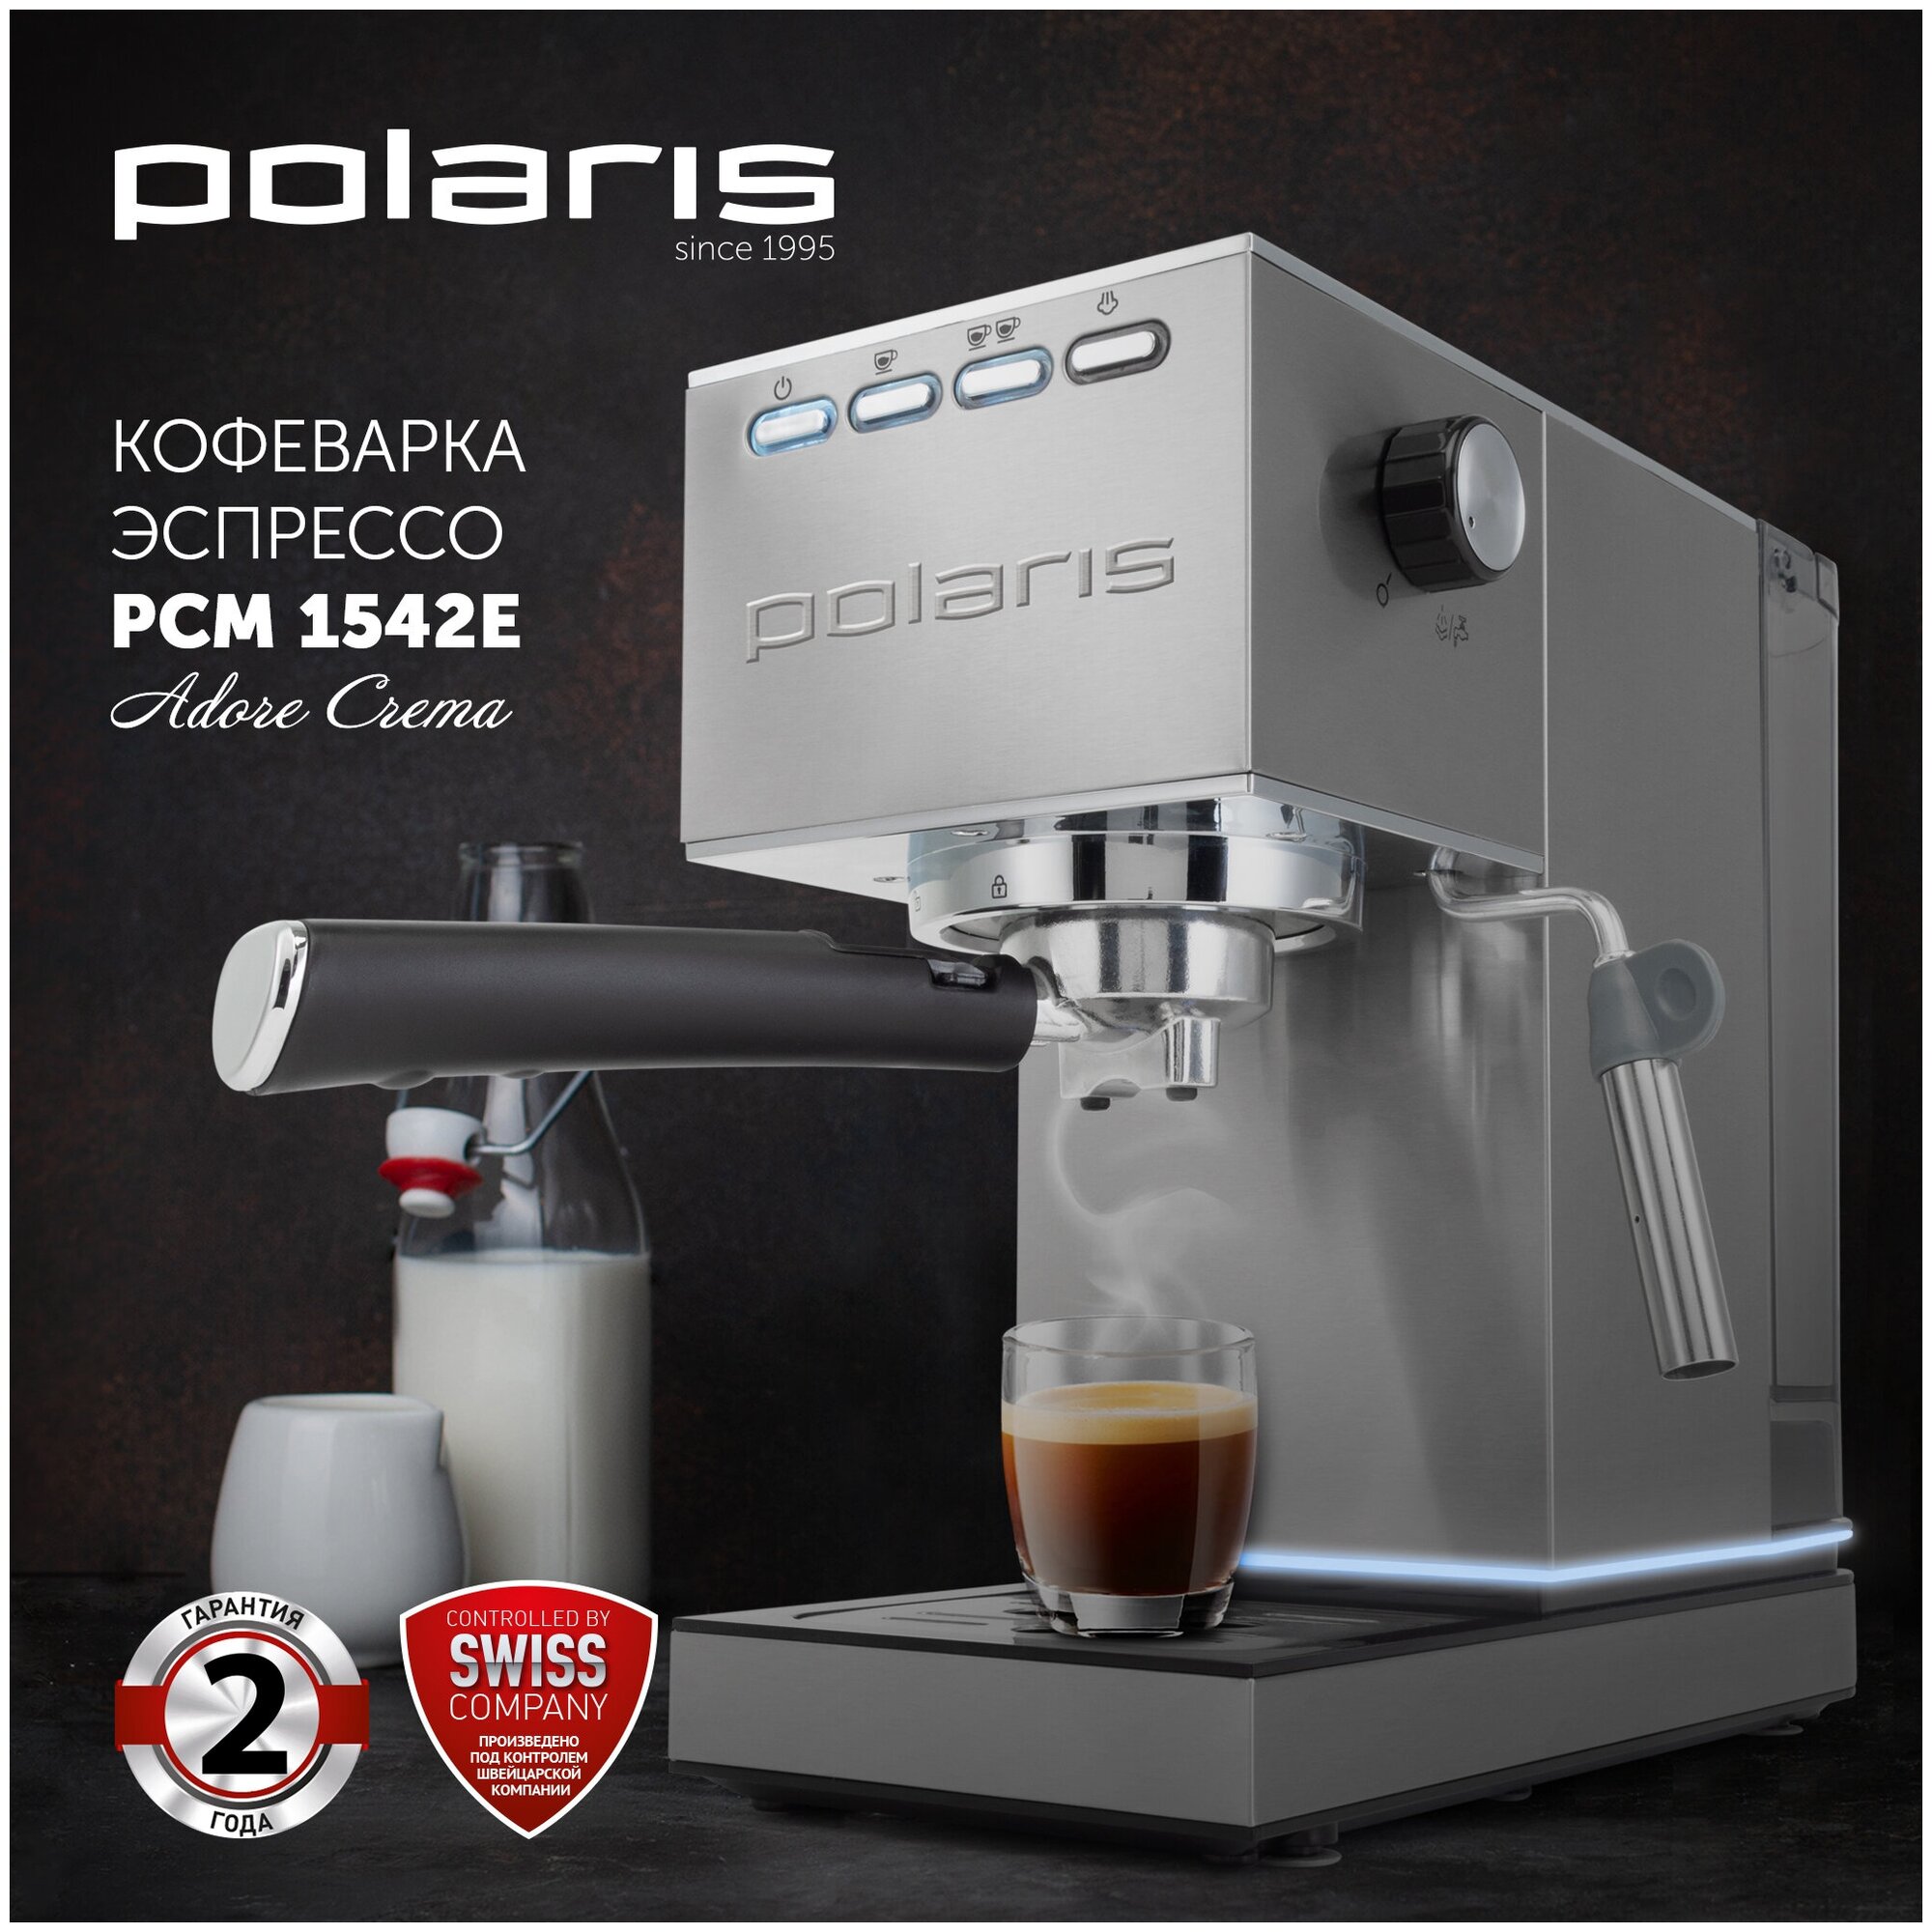 Кофеварка Polaris PCM 1542E Adore Crema купить в Красноярске